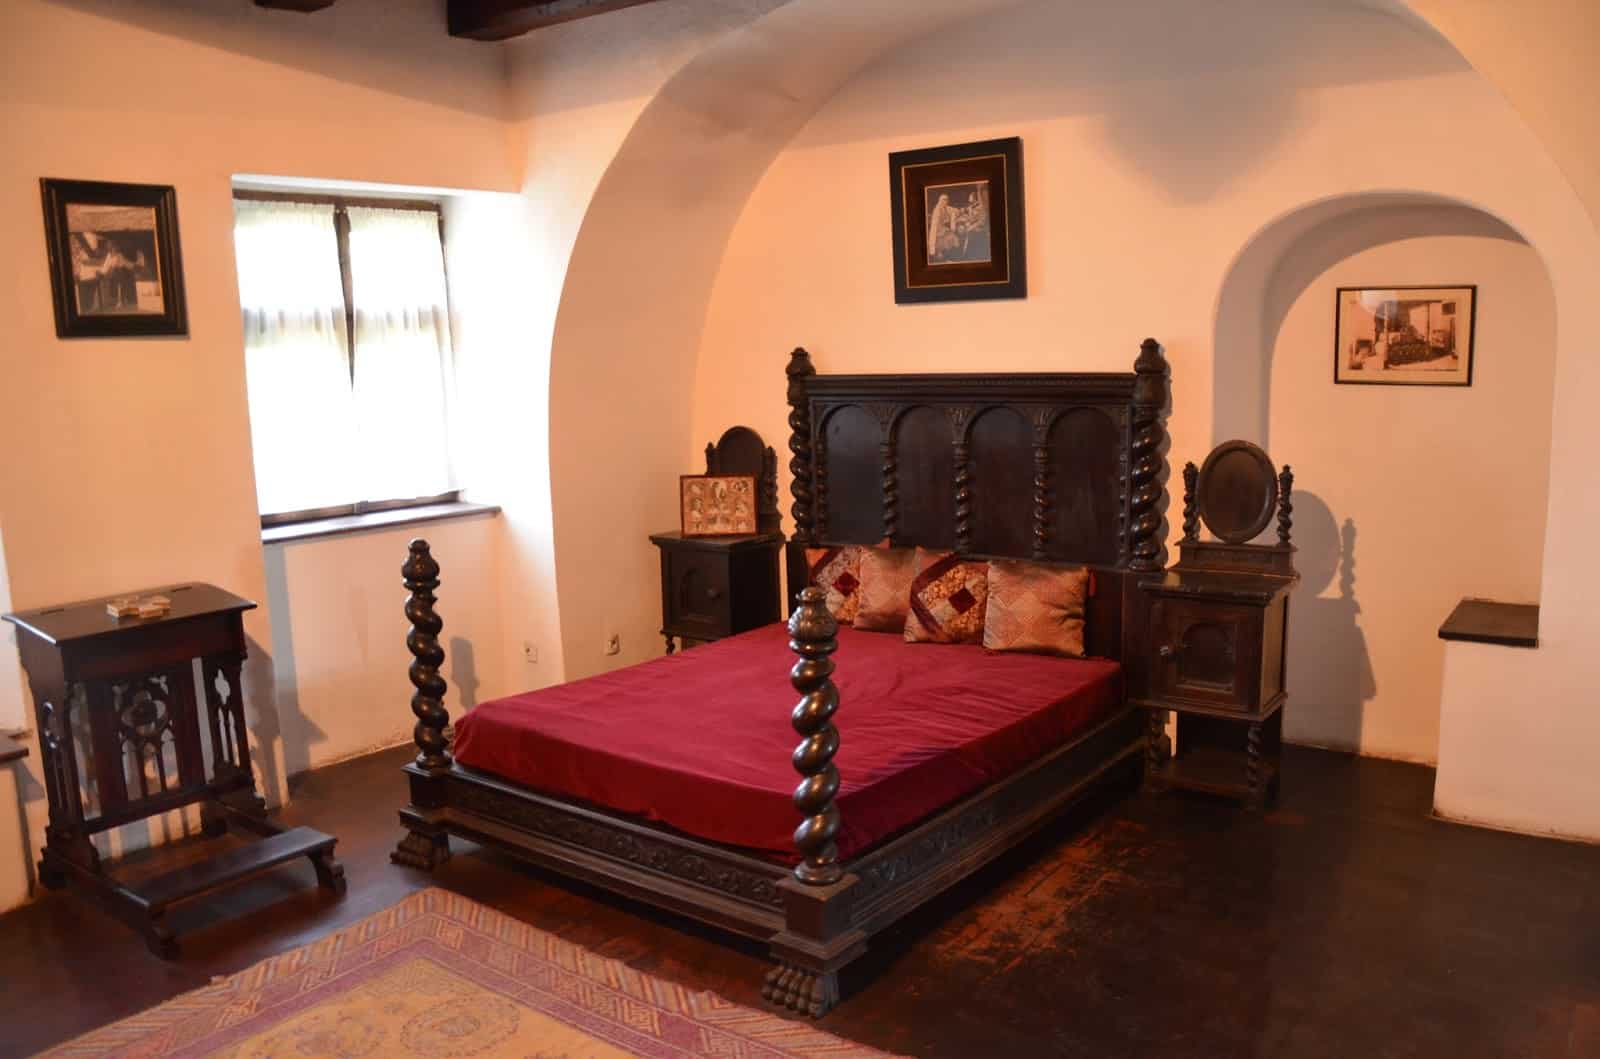 Queen’s bedroom at Bran Castle in Bran, Romania